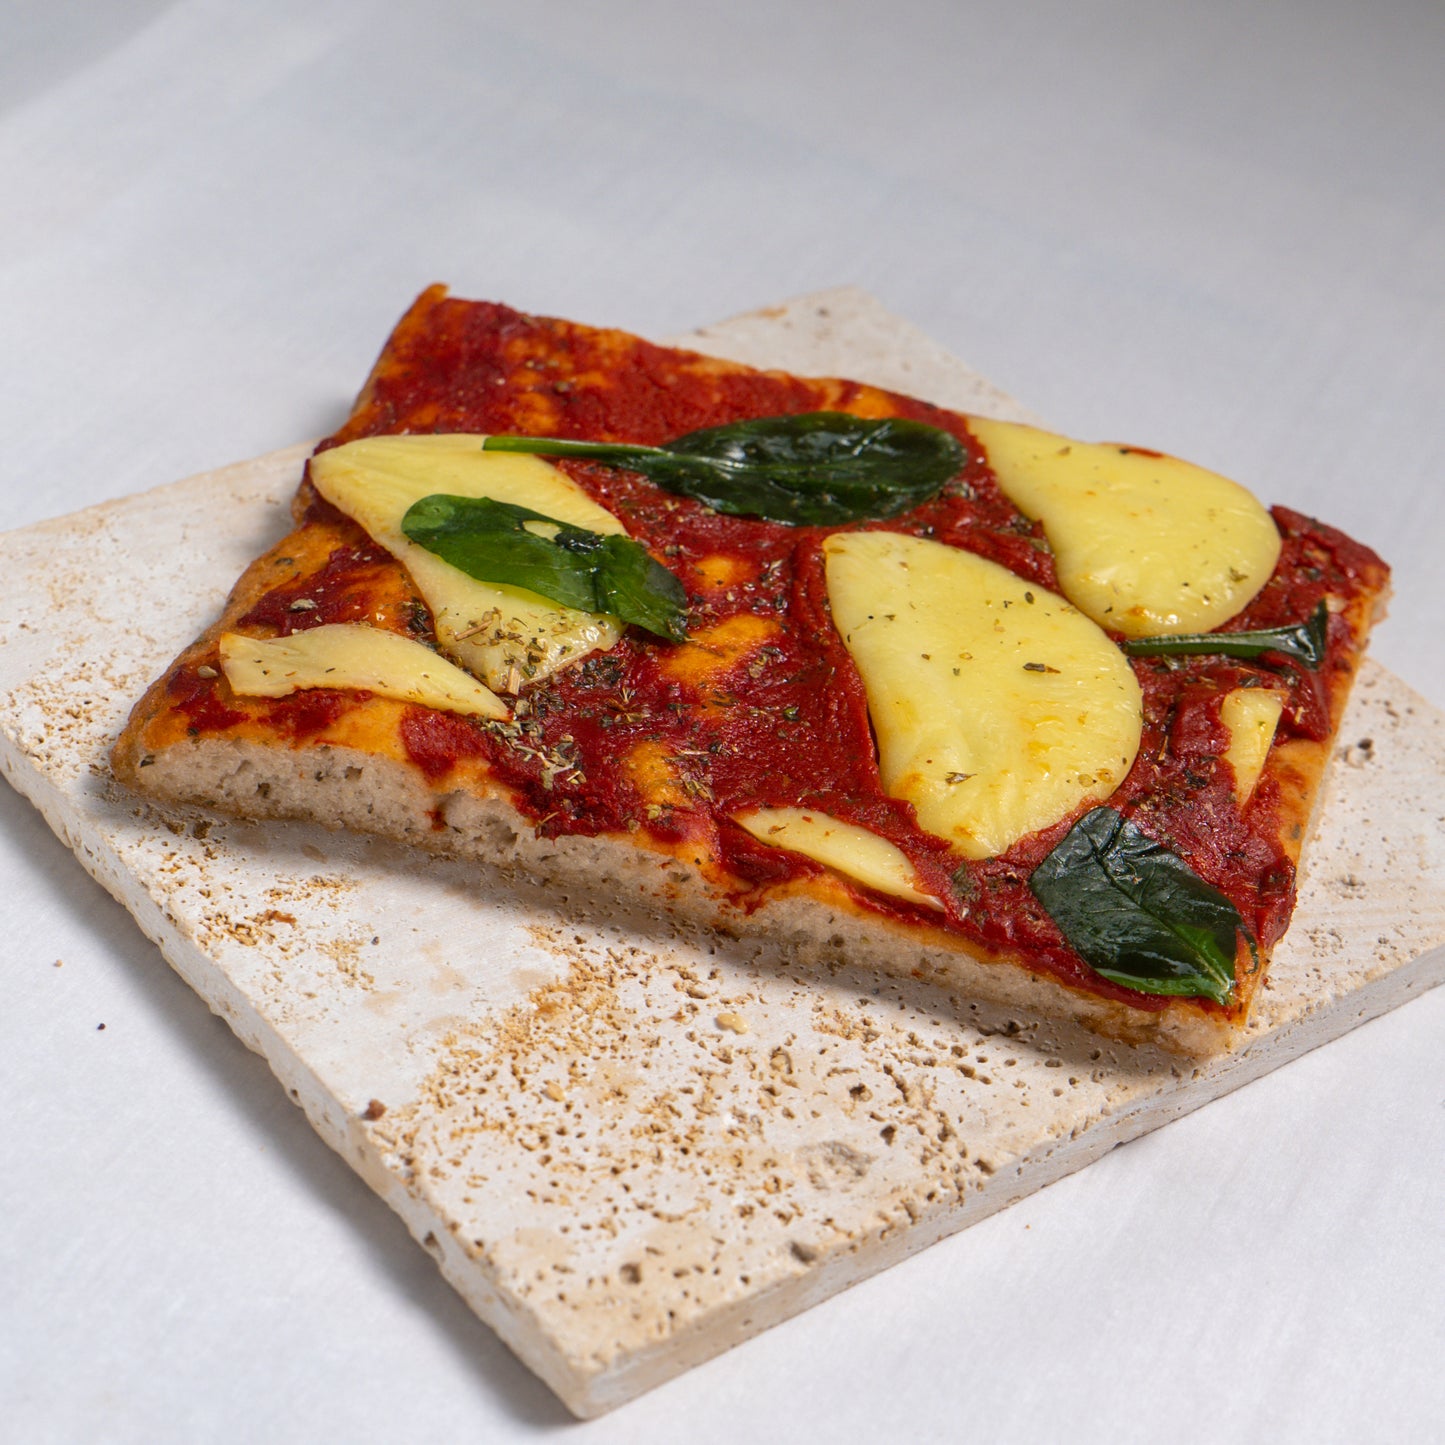 Graziela - Pizza Jambon 100% naturellement sans gluten